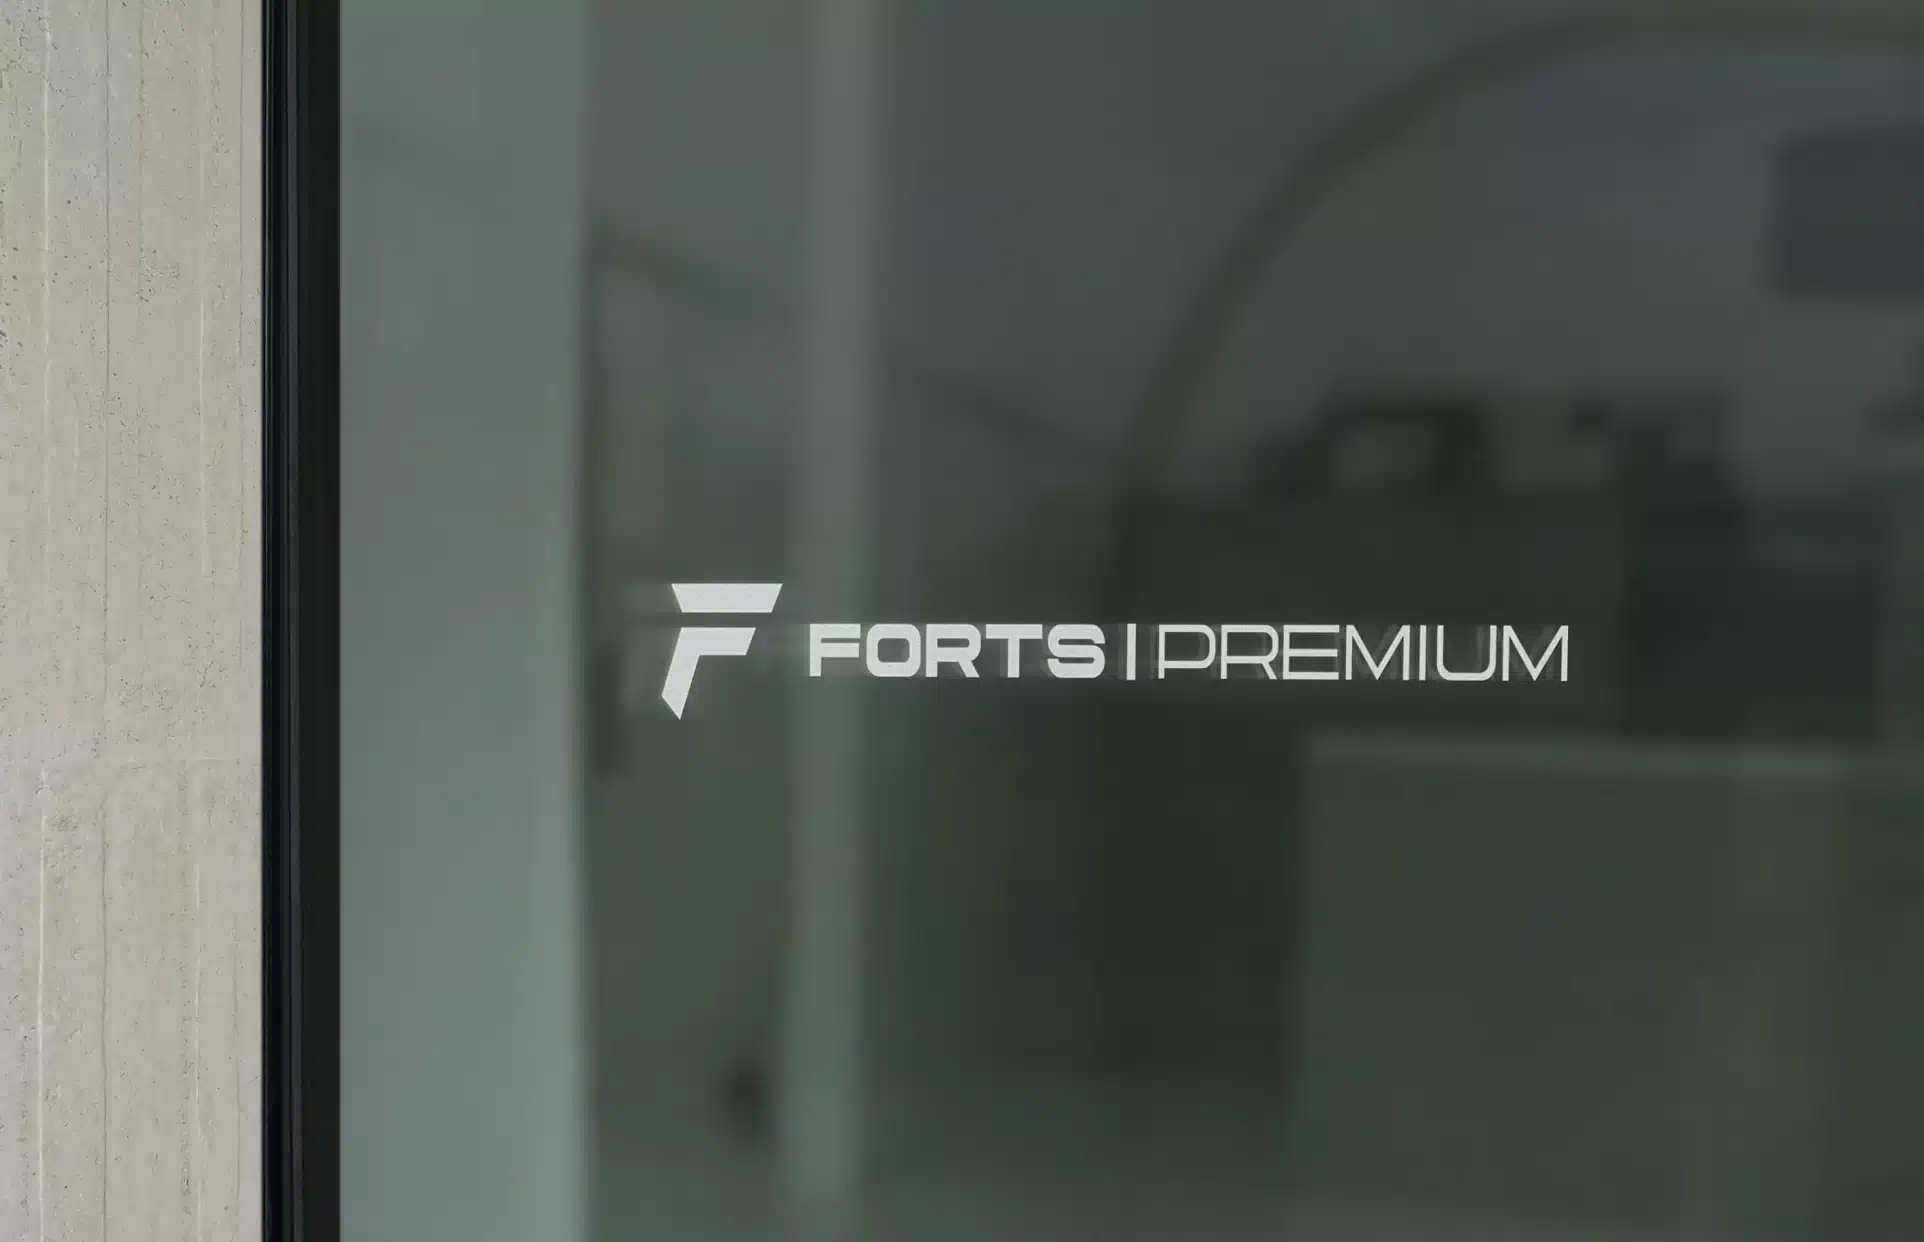 Forts Premium